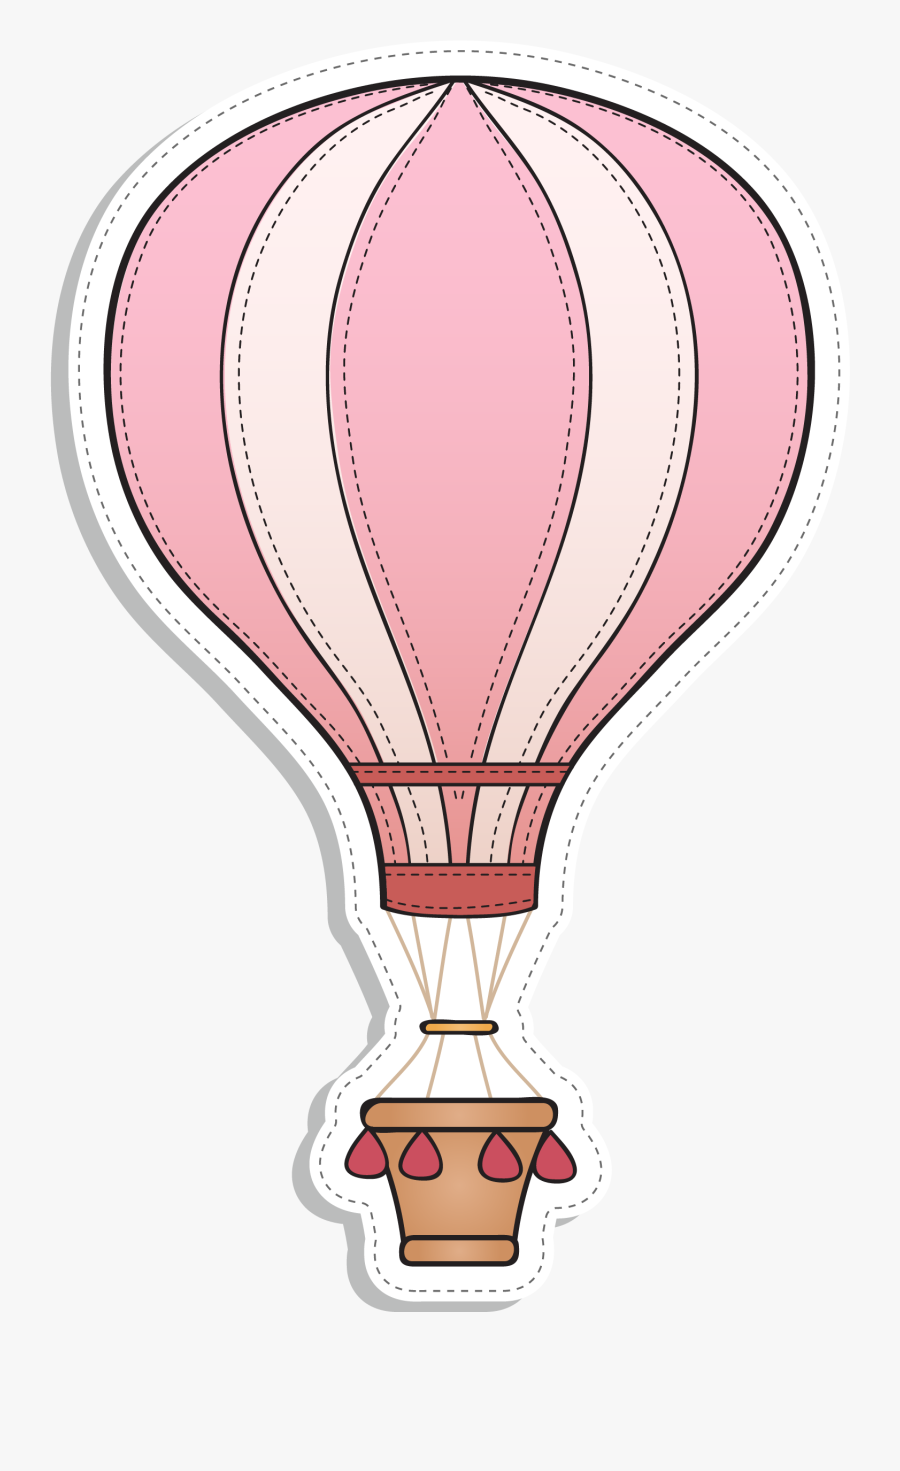 Hot Air Balloon - Hot Air Balloon Vector Blue, Transparent Clipart